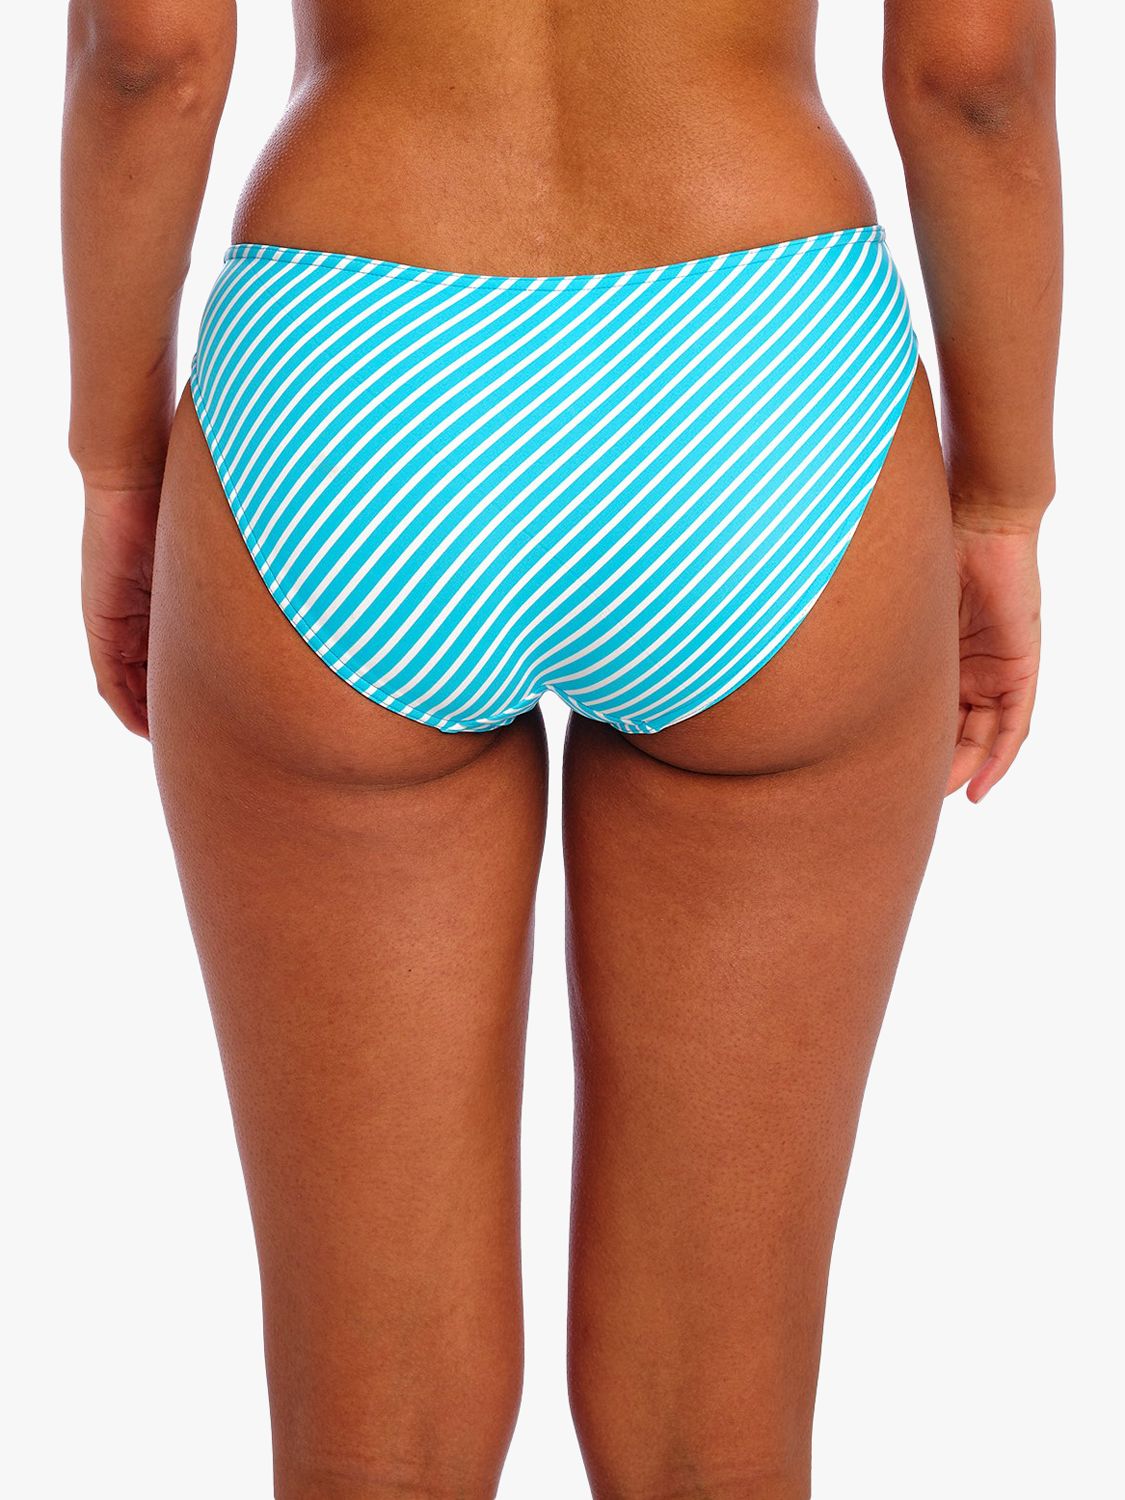 Freya Jewel Cove Stripe Bikini Bottoms, Turquoise/Multi, M